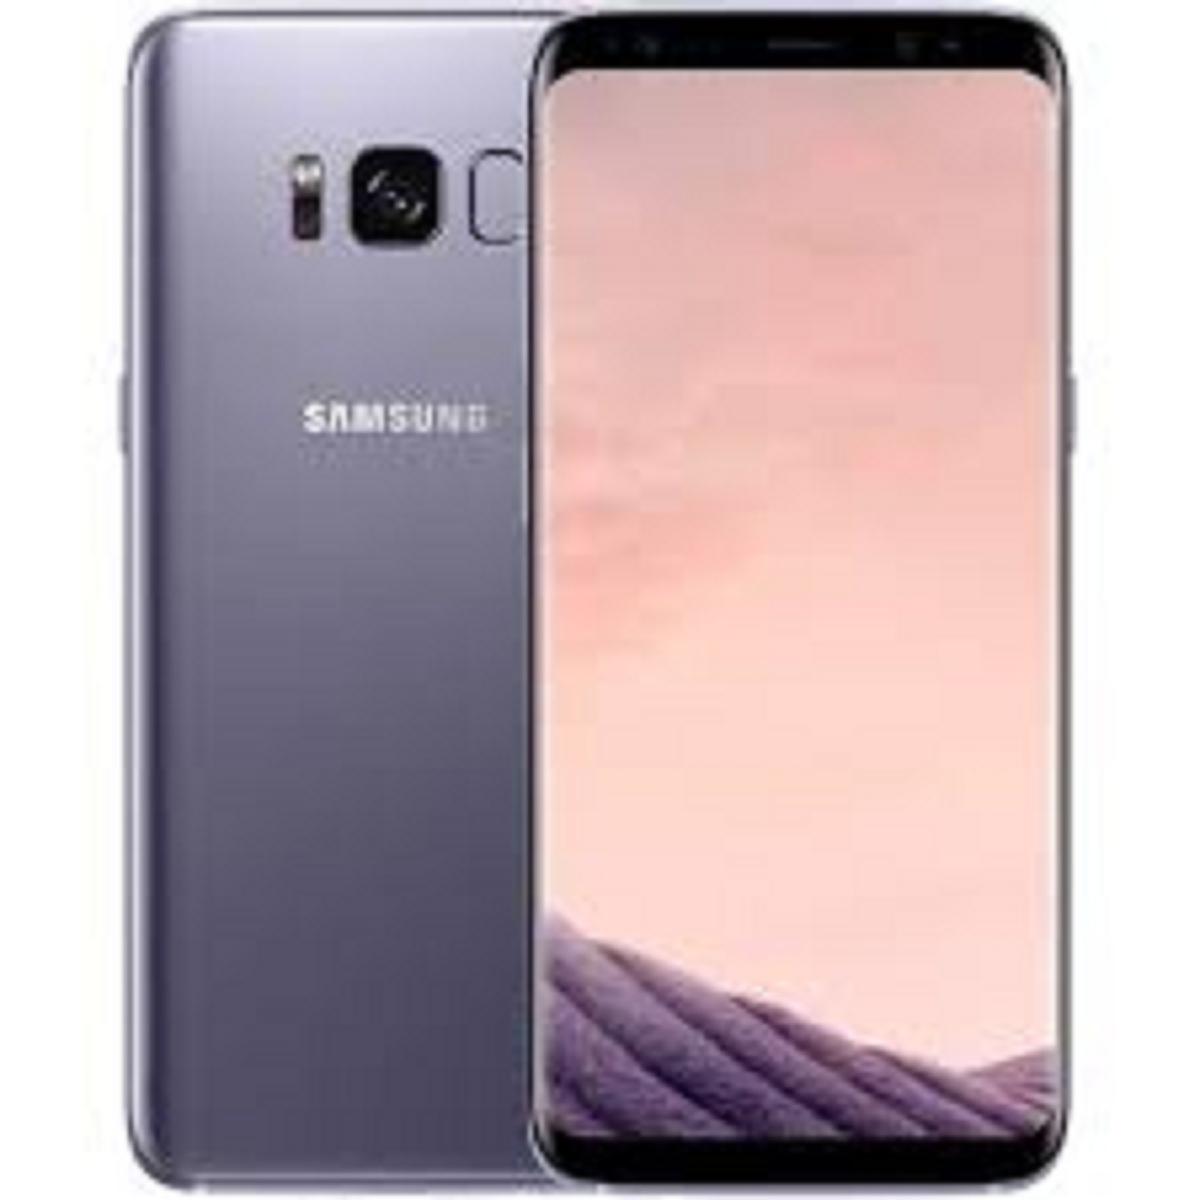 SALE TO SỐC  Điện Thoại Samsung Galaxy S8 Plus ram 4G bộ nhớ 64G / Samsung S8 Plus Loại - Màn hình Vô cực Màn hình: Super AMOLED, 6.2", Quad HD+ (2K+)Màn hình 6.2 inch 2K AMOLED (2560 x 1440 pixel) S8 PLUS màn ám, lưu ảnh nặng đủ màu